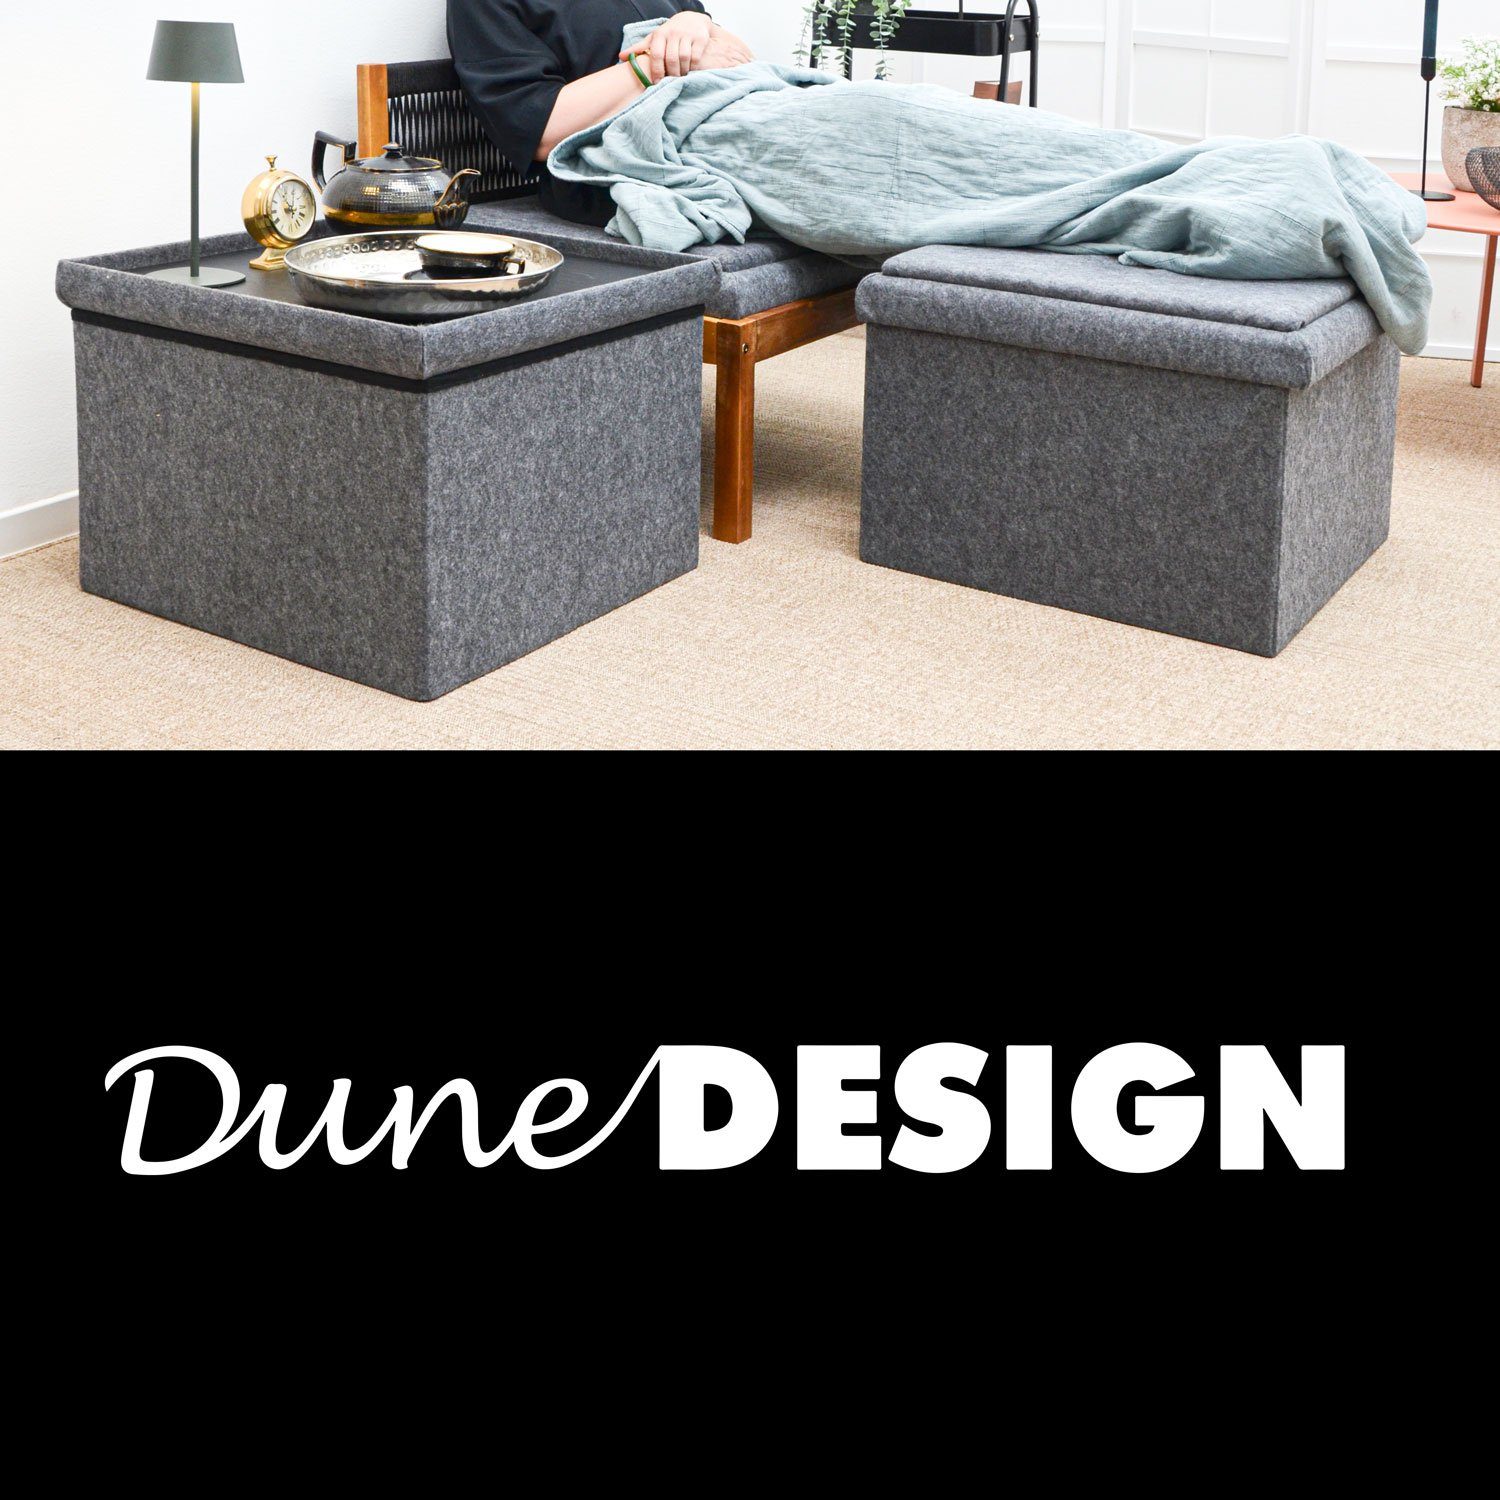 DuneDesign Sitzwürfel 3-in-1 mit 56x56x40 Beistellhocker Sofa Stauraum Grau Sitzhocker Hocker Filz